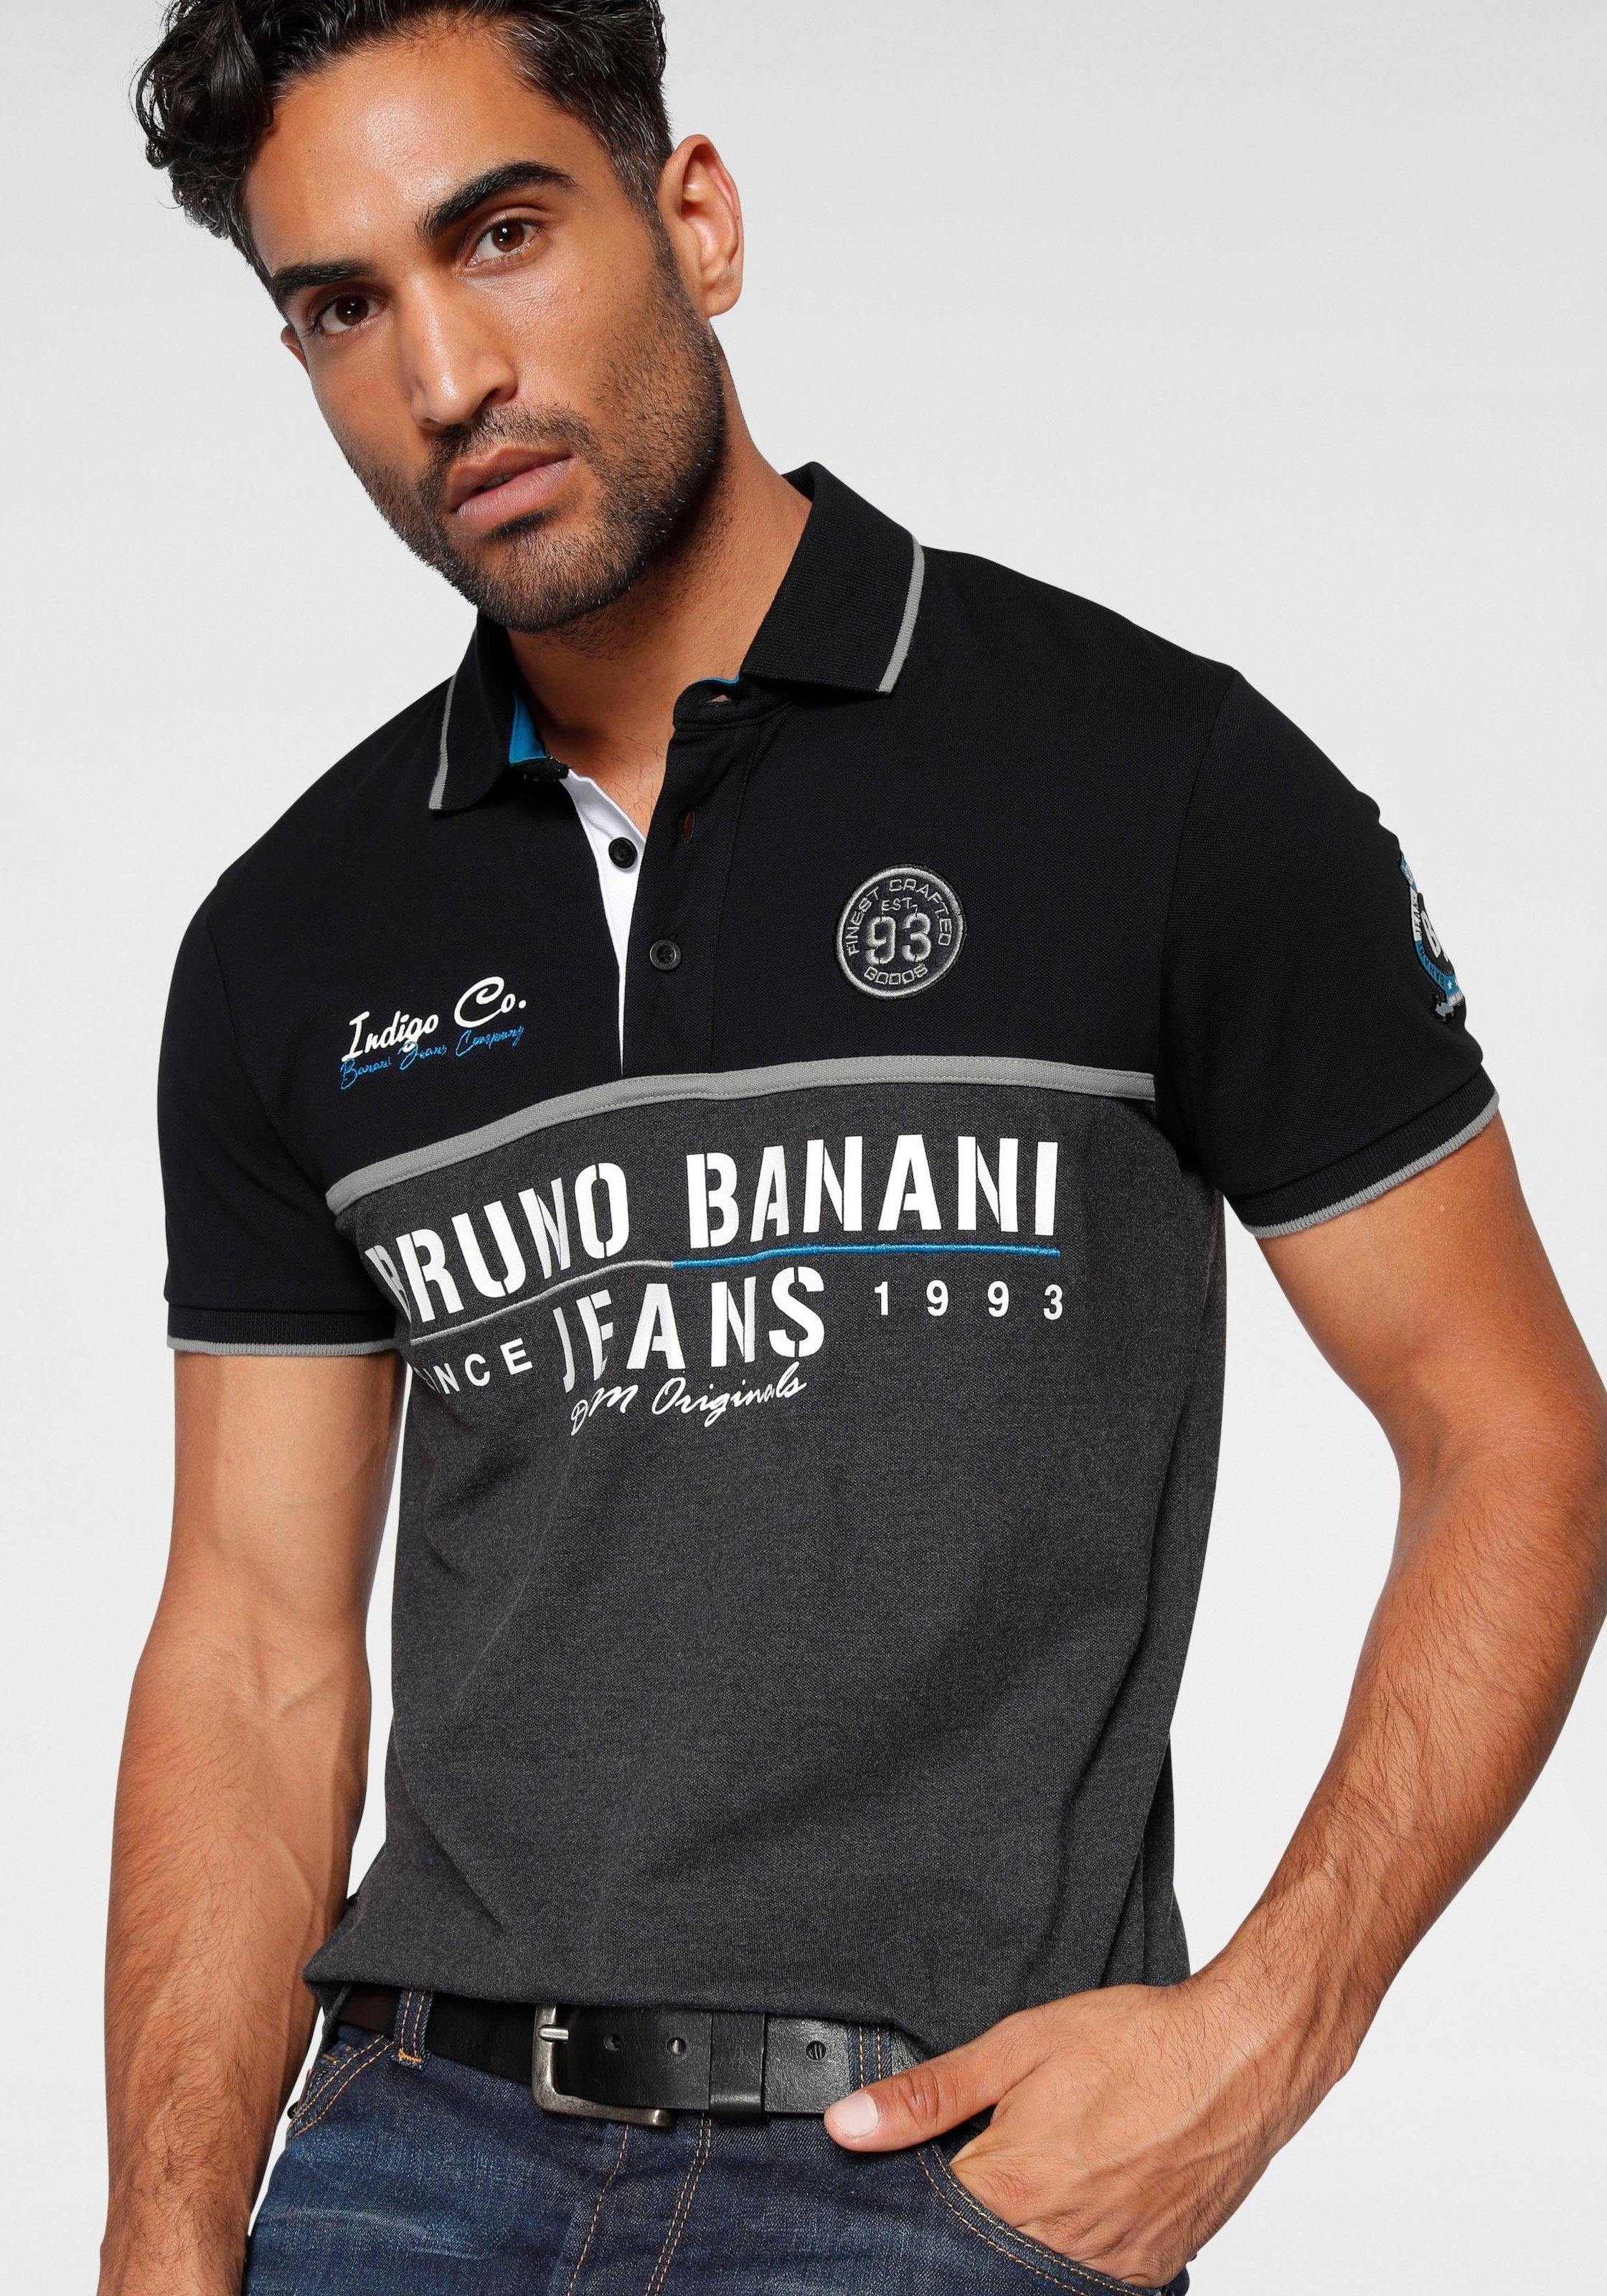 Piqué Banani Bruno bequem Poloshirt, kaufen